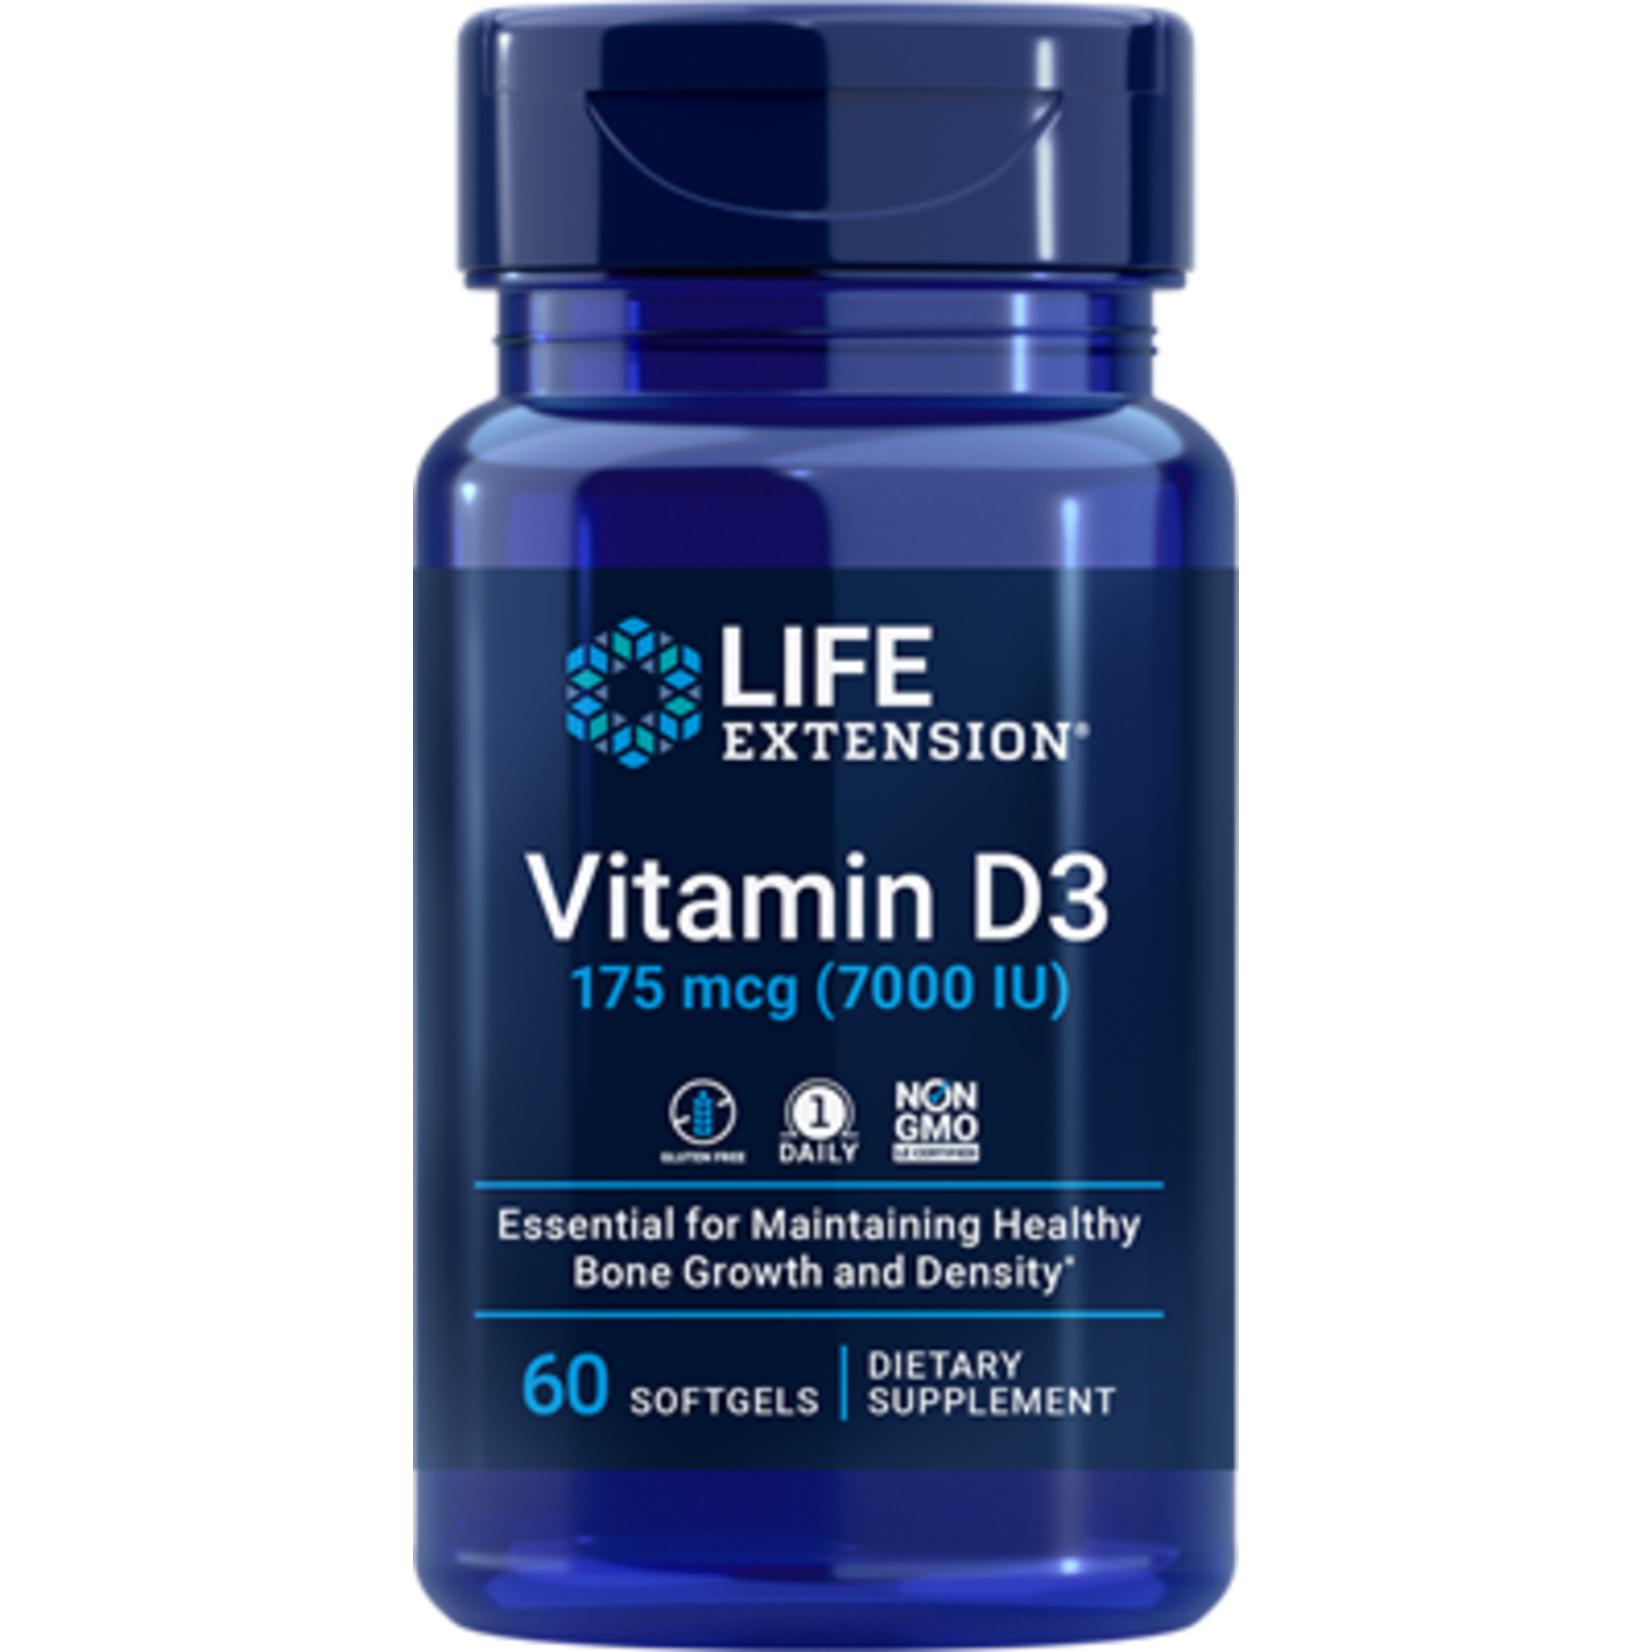 Life Extension Life Extension - Vitamin D3 7000 IU - 60 Softgels